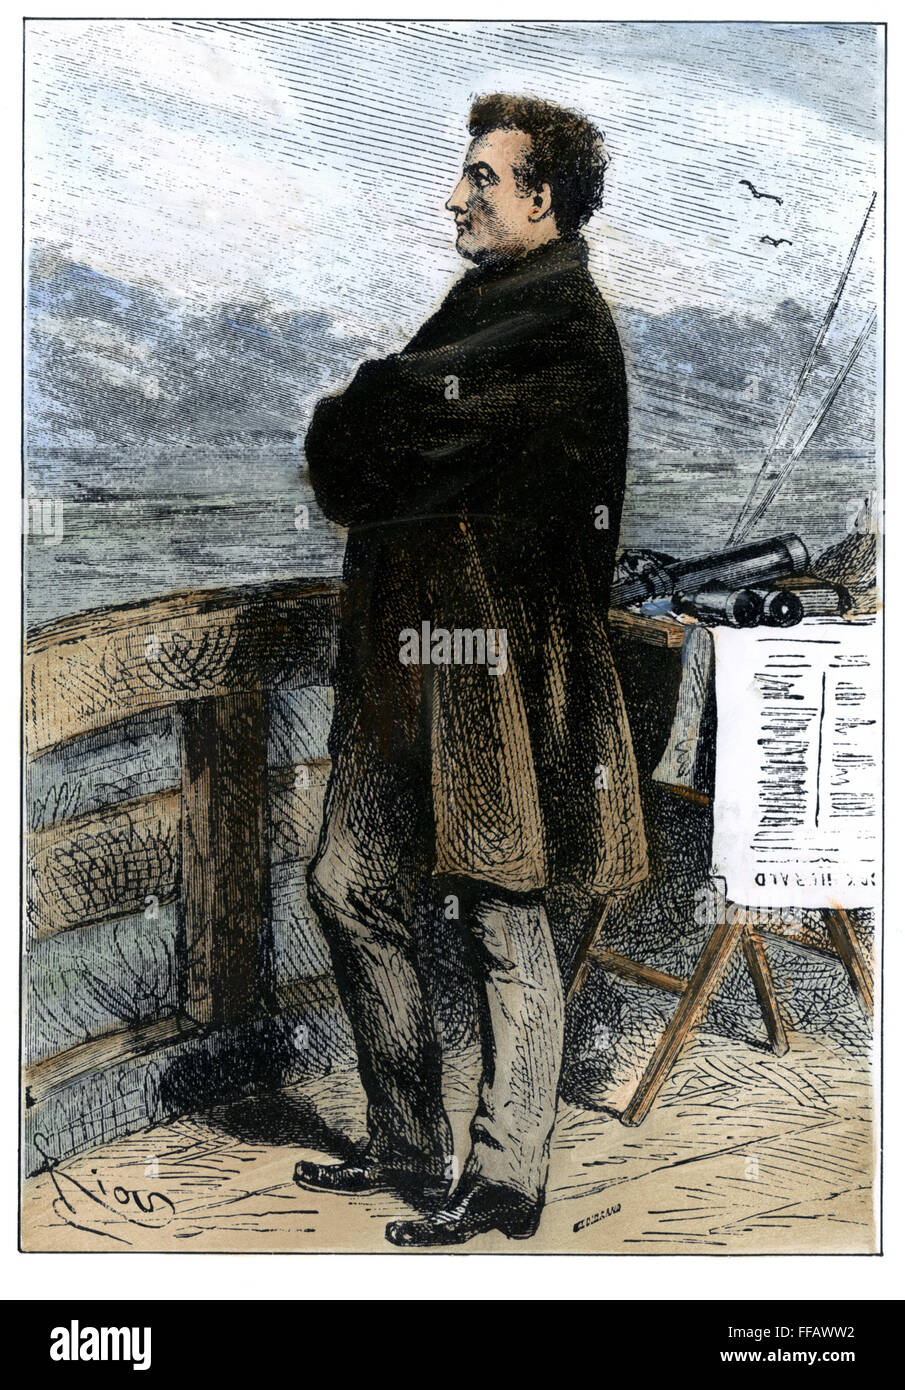 VERNE : 20 000 lieues. /NProfessor Aronnax, le narrateur de "Jules Verne Vingt mille lieues sous les mers" - gravure sur bois, 1870, d'après un dessin de Edouard Riou pour laquelle Verne lui-même a servi de modèle. Banque D'Images